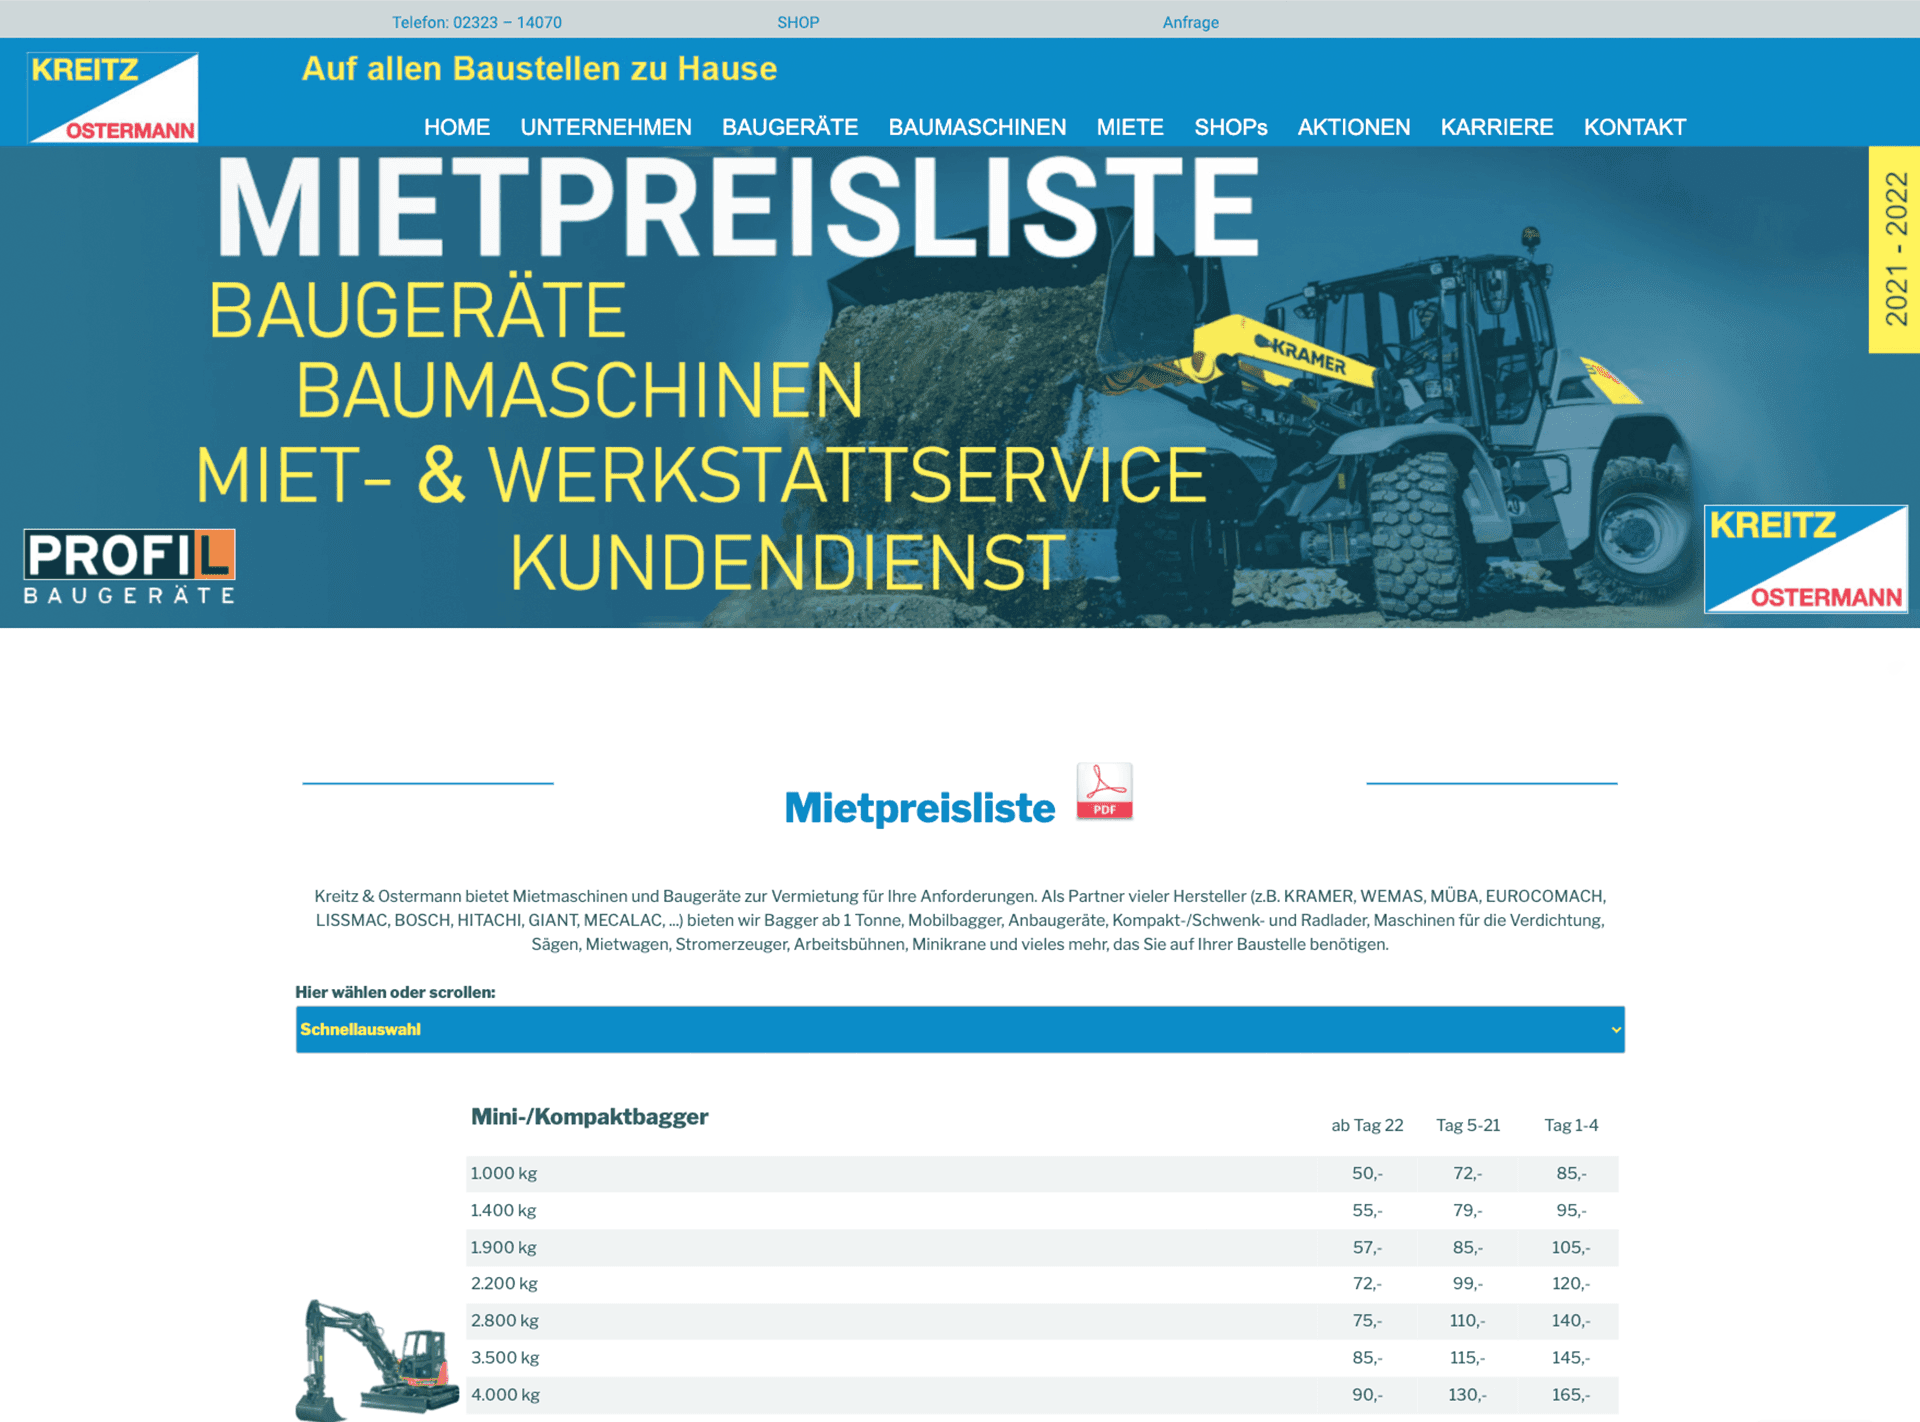 screenshot website kreitz ostermann